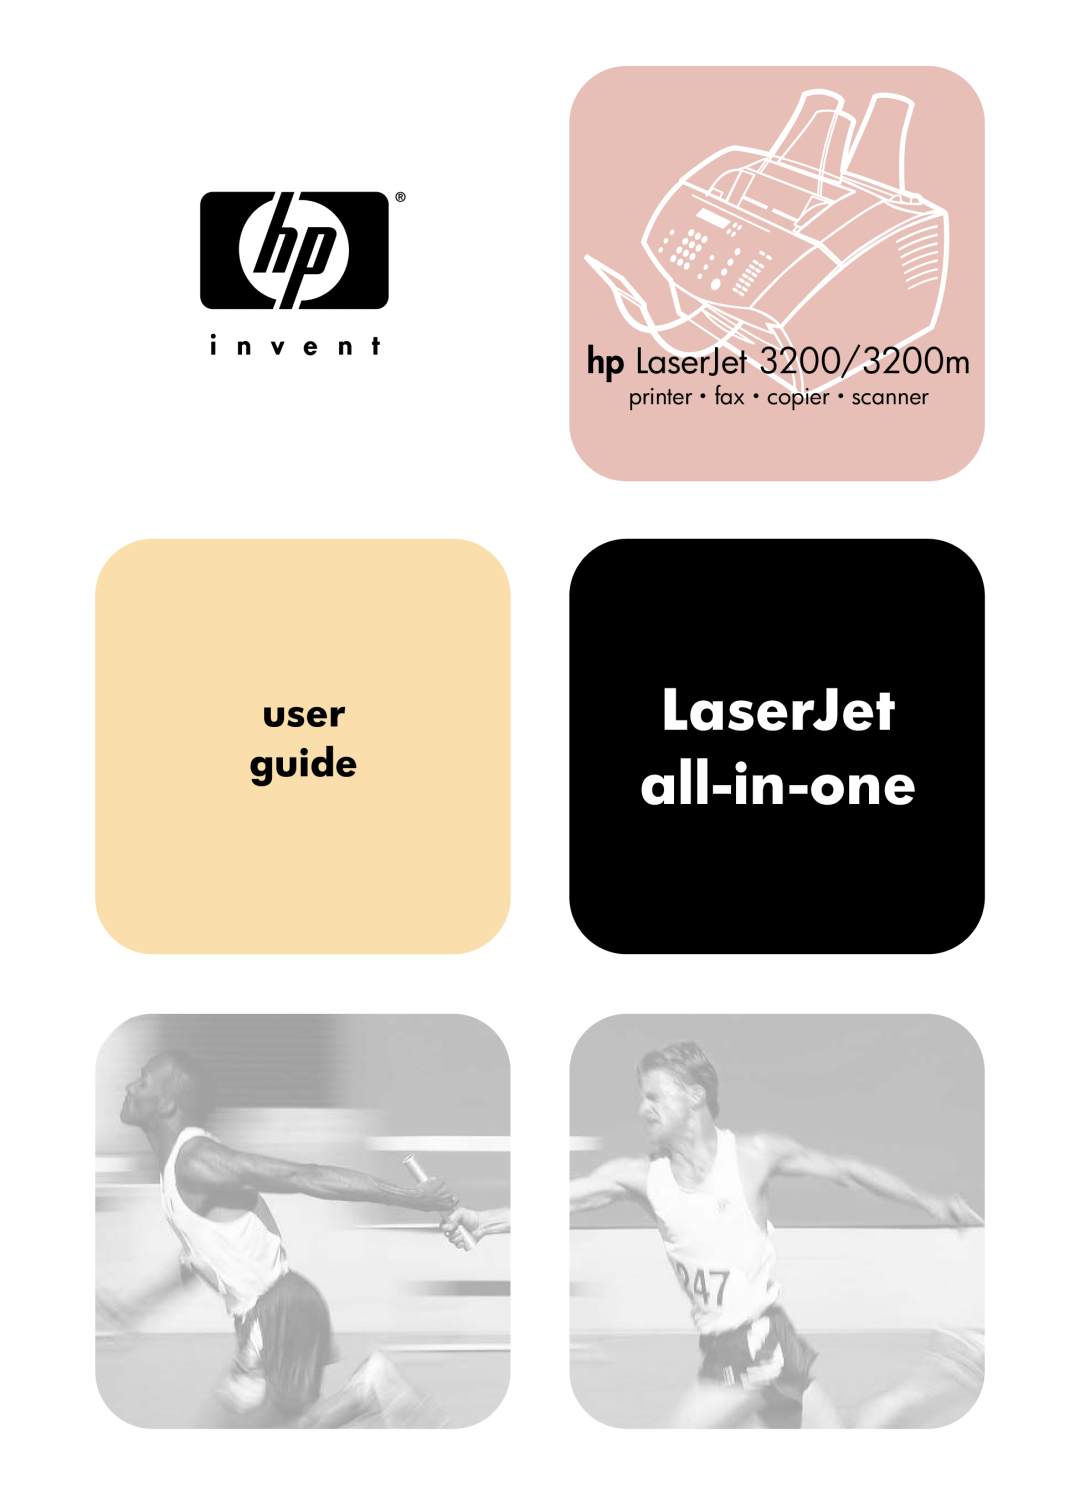 HP manual LaserJet all-in-one, user guide, hp LaserJet 3200/3200m, printer · fax · copier · scanner 